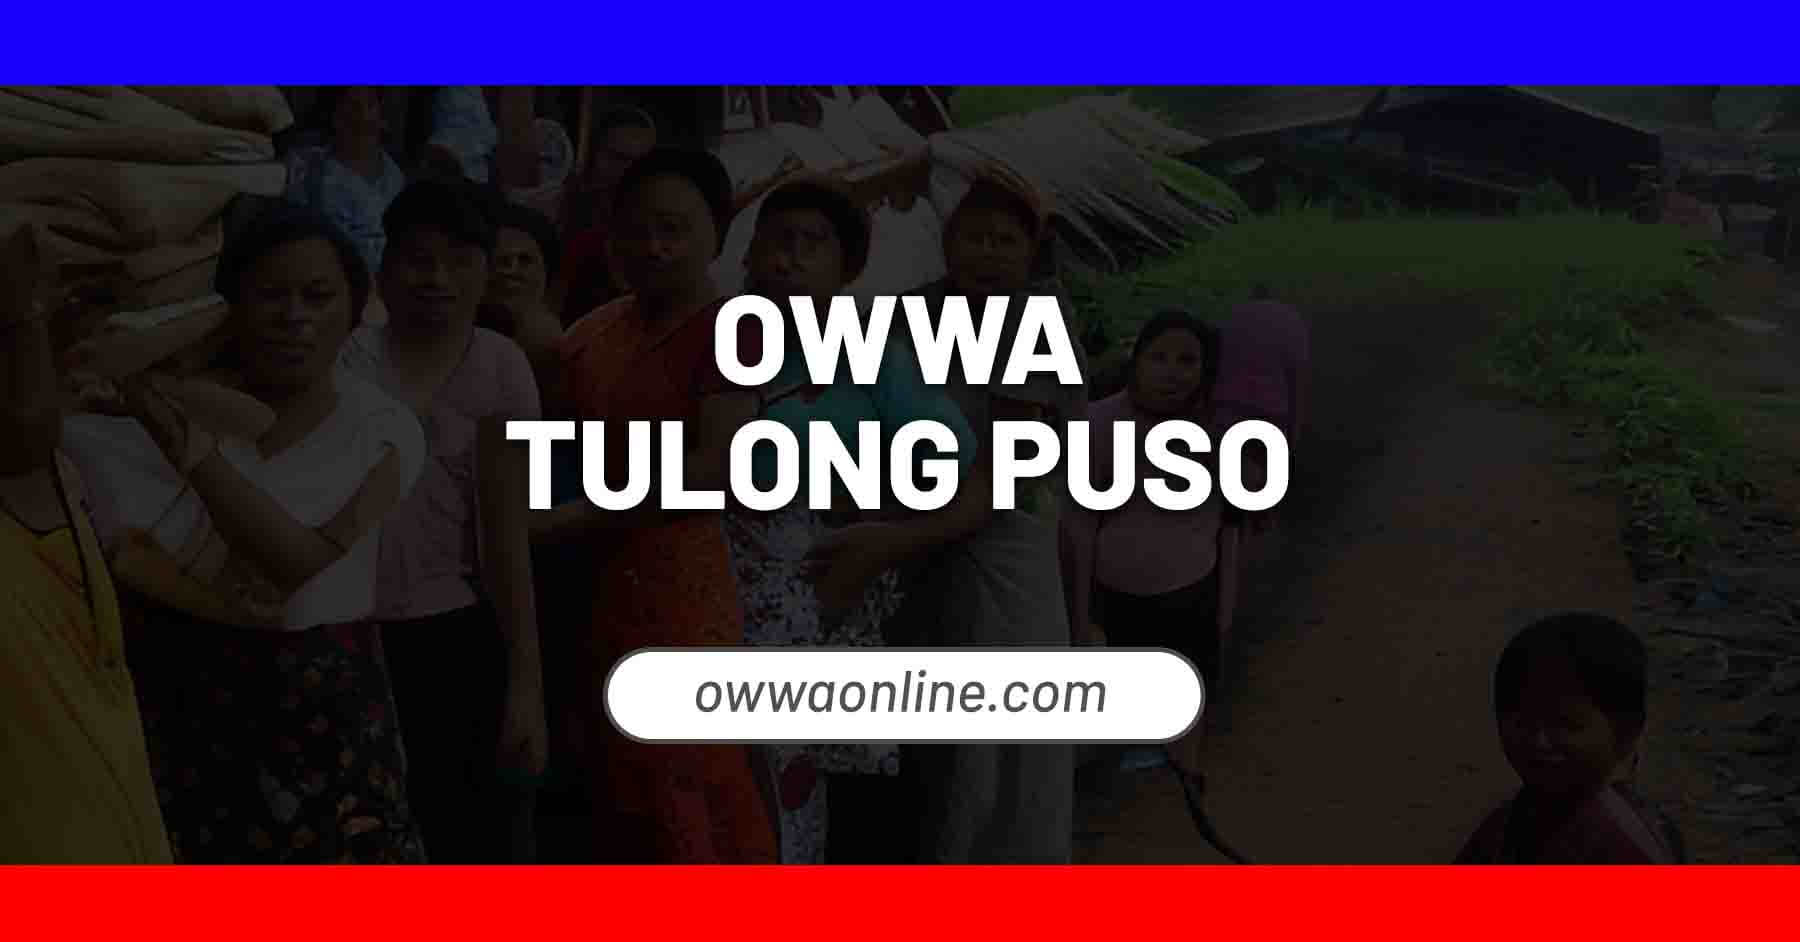 owwa tulong puso program livelihood for ofws